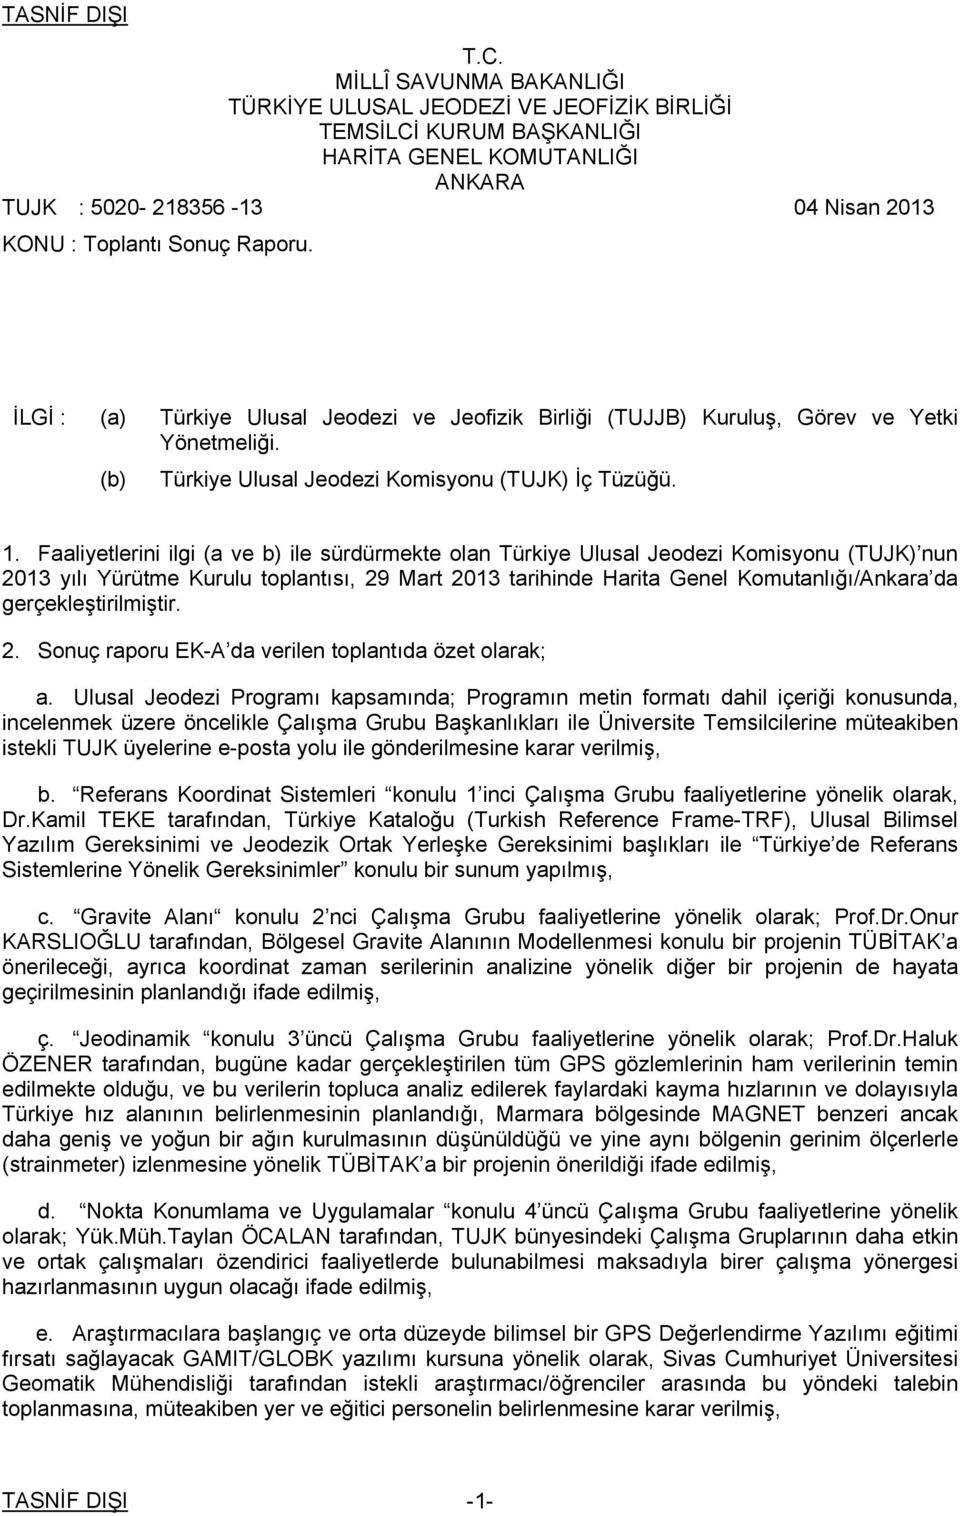 Faaliyetlerini ilgi (a ve b) ile sürdürmekte olan Türkiye Ulusal Jeodezi Komisyonu (TUJK) nun 2013 yılı Yürütme Kurulu toplantısı, 29 Mart 2013 tarihinde Harita Genel Komutanlığı/Ankara da